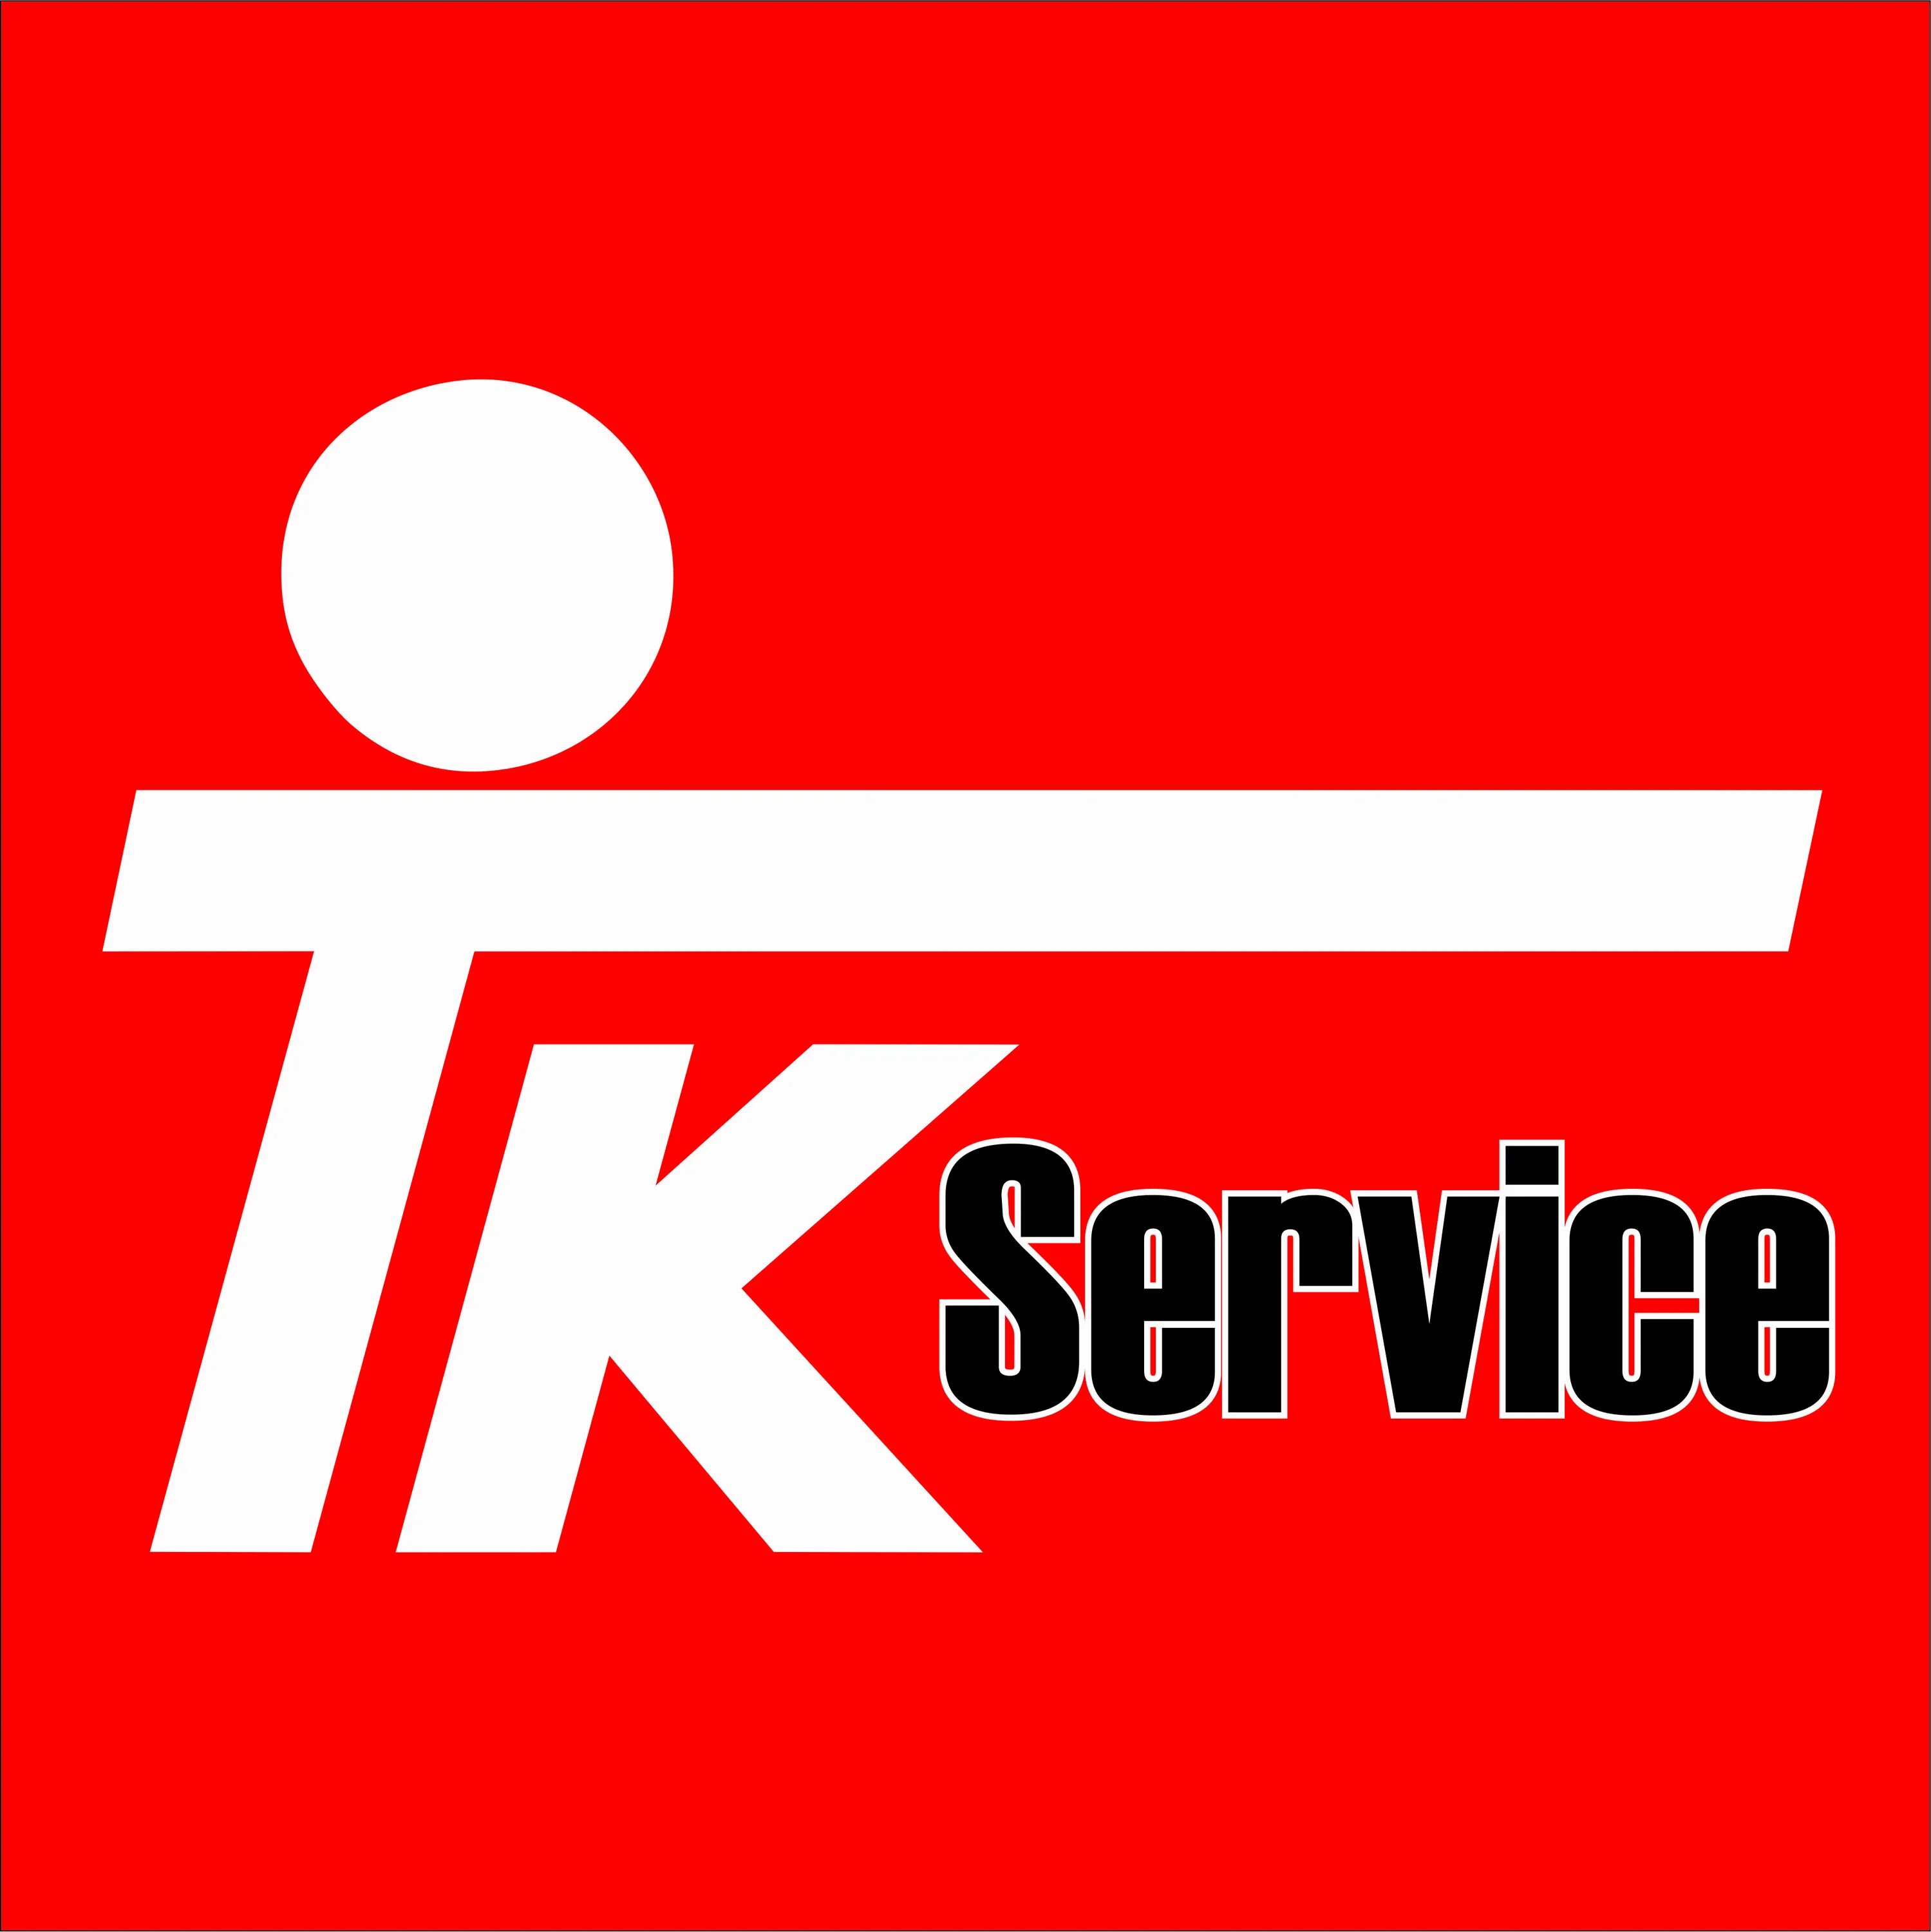 Логотип тг. Логотип ТК. Логотип tk. ТТК лого.